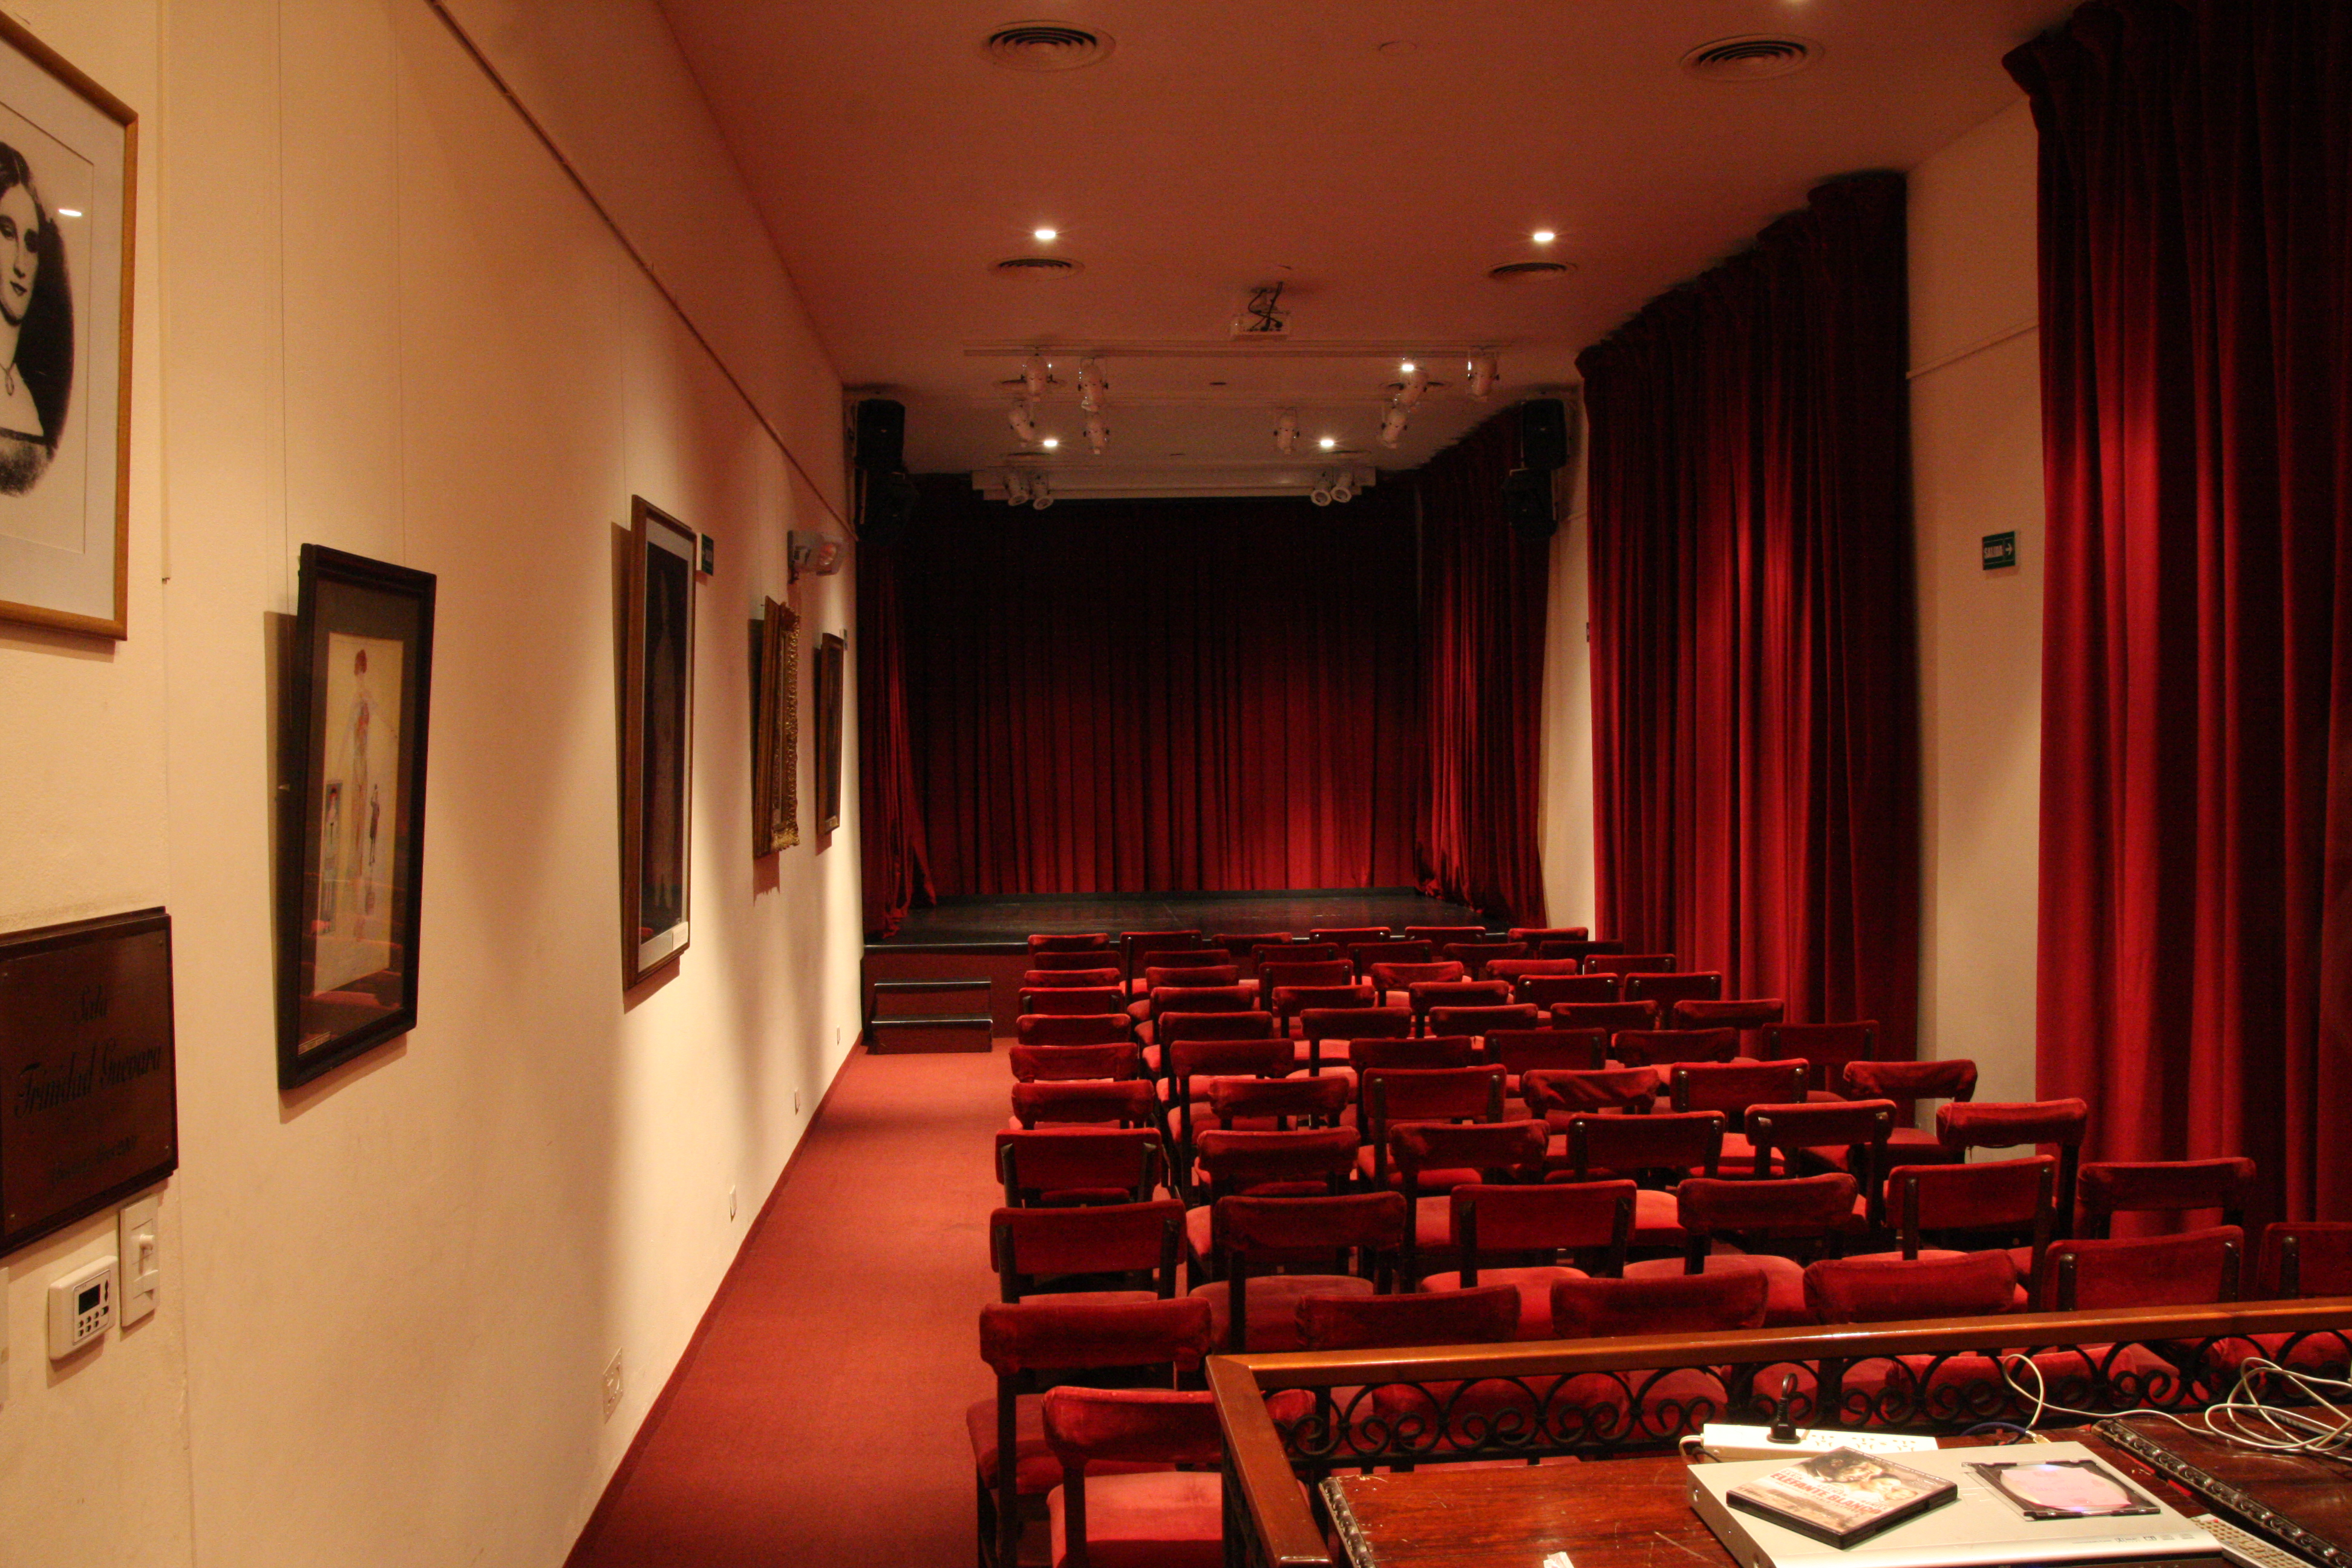 La sala Trinidad Guevara tiene capacidad para 50 personas, y se destinó para ser usada por el Instituto Nacional de Estudios de Teatro (INET), cuya misión es fomentar y estimular estudios e investigaciones de la literatura dramática, del arte escénico y de las técnicas correspondientes a la realización del espectáculo teatral